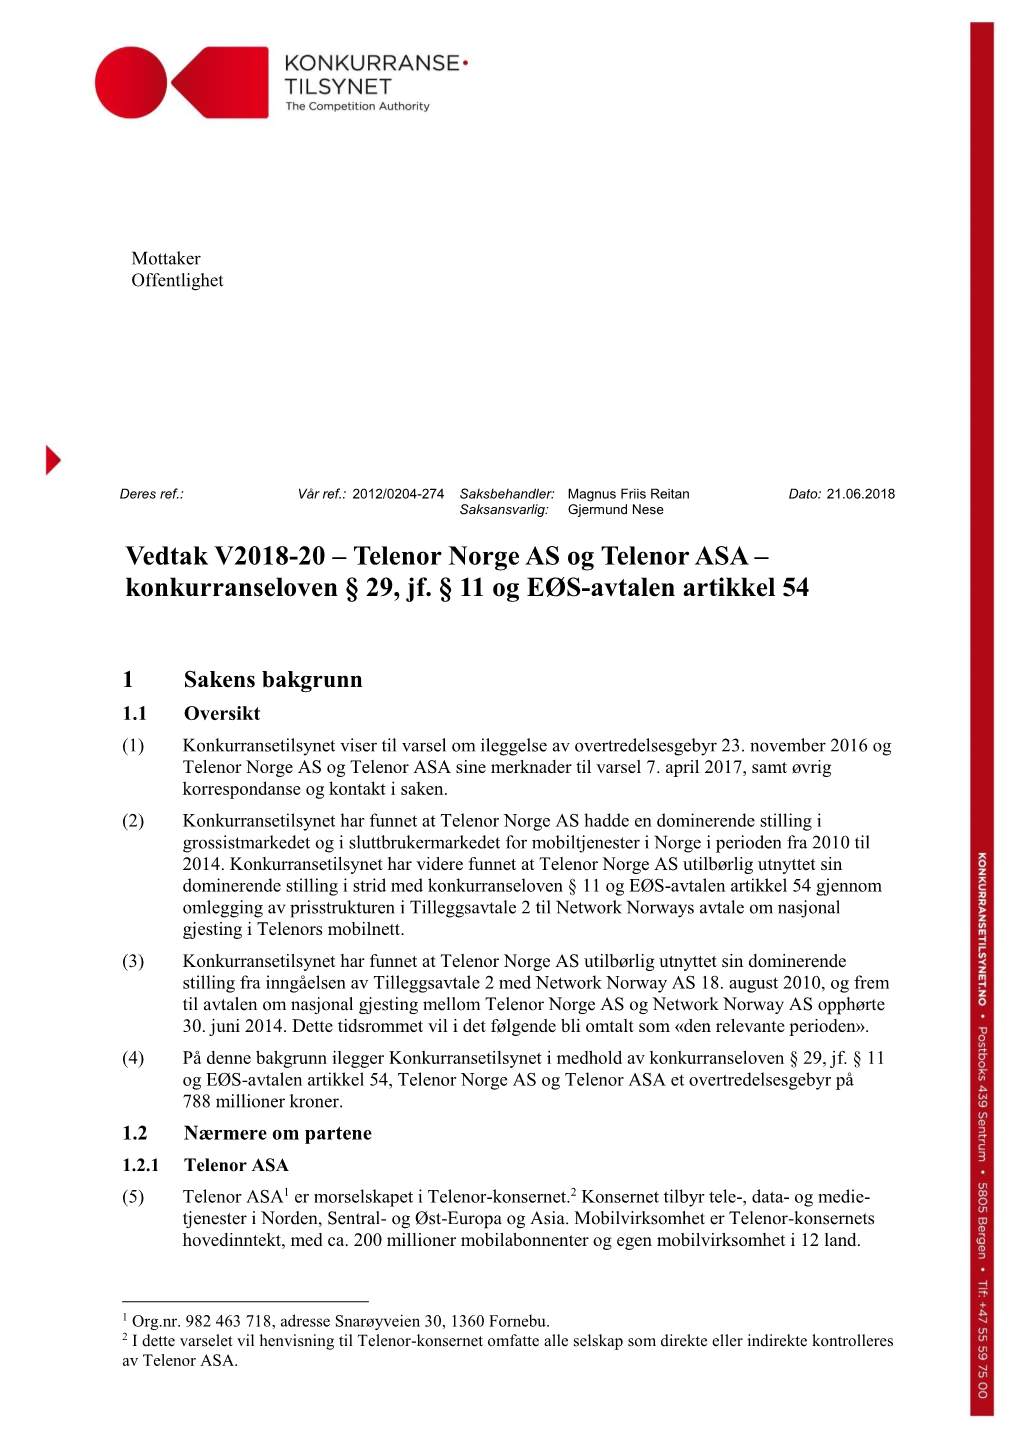 Telenor Norge AS Og Telenor ASA – Konkurranseloven § 29, Jf